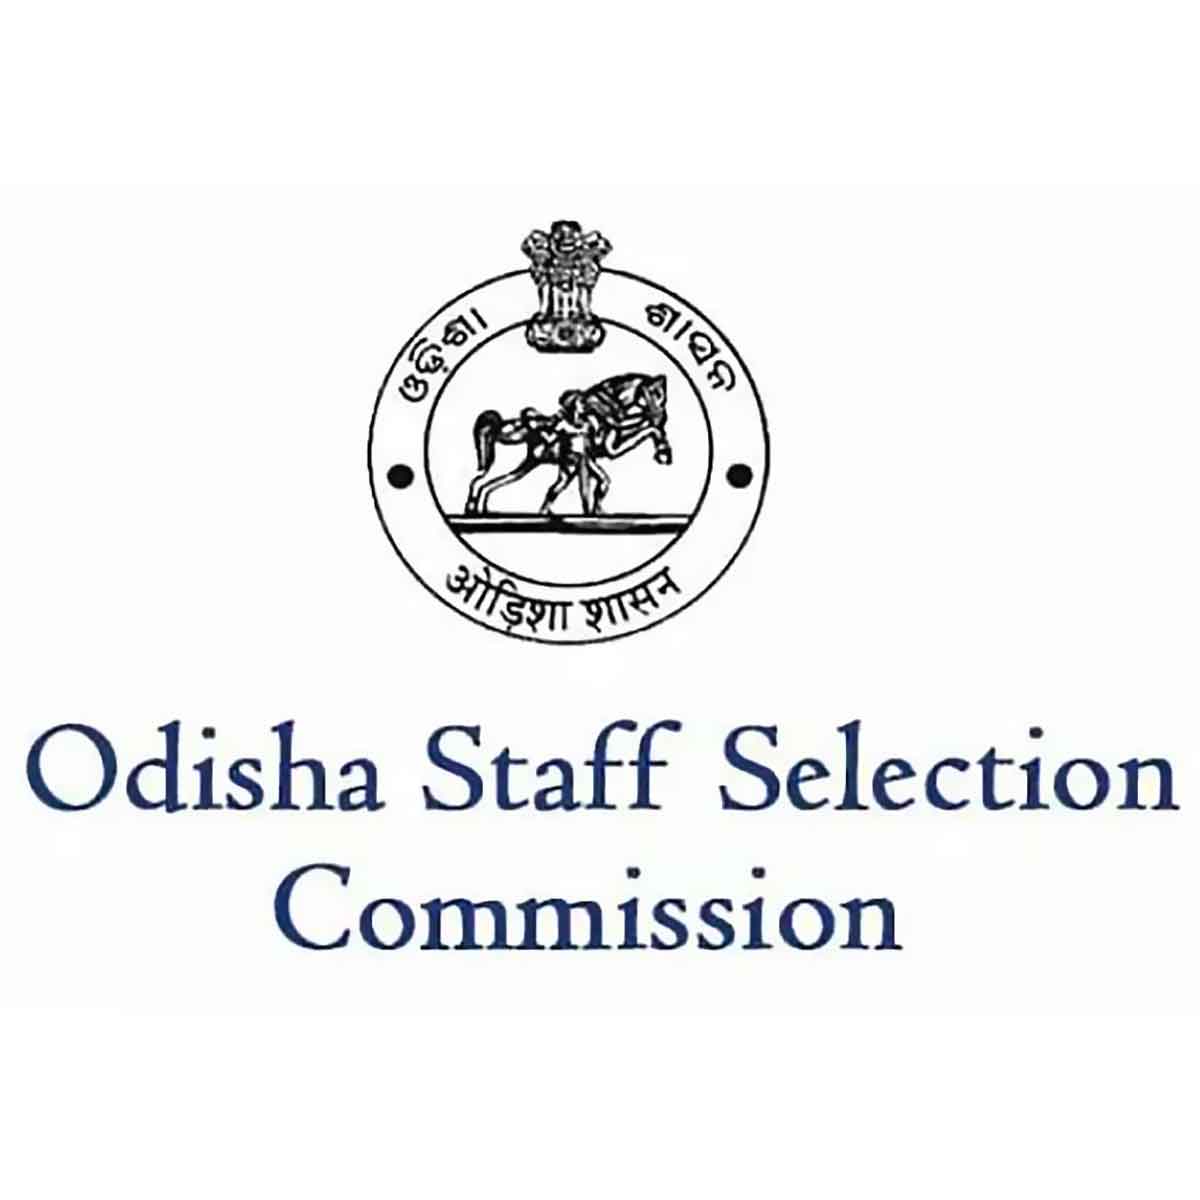 Ossc Recruitment - Odisha Staff Selection Commission Job Vacancies